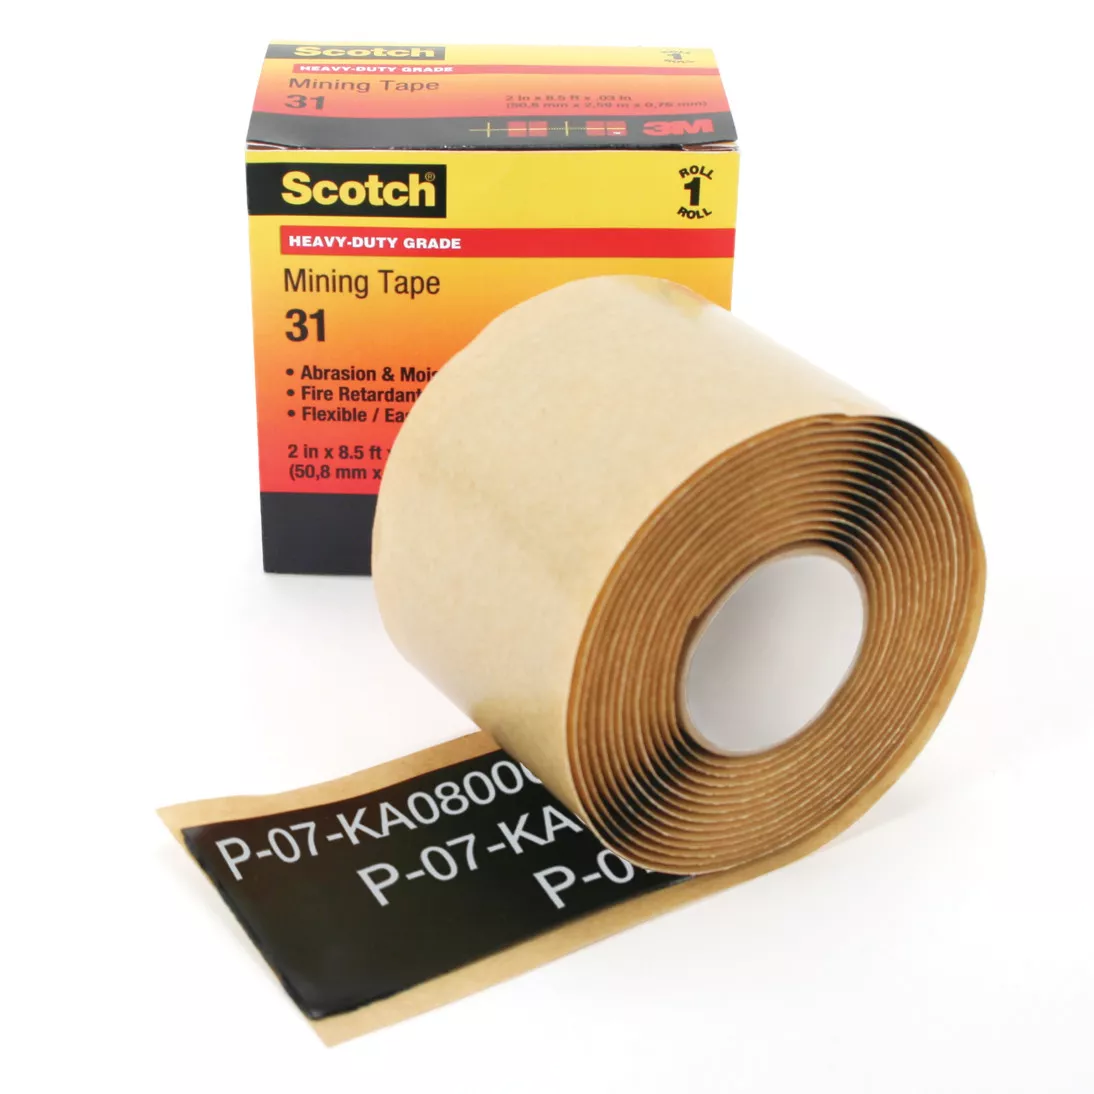 Scotch® Heavy-Duty Mining Tape 31, 2 in x 10 ft, Black, 1 roll/carton,
10 rolls/Case